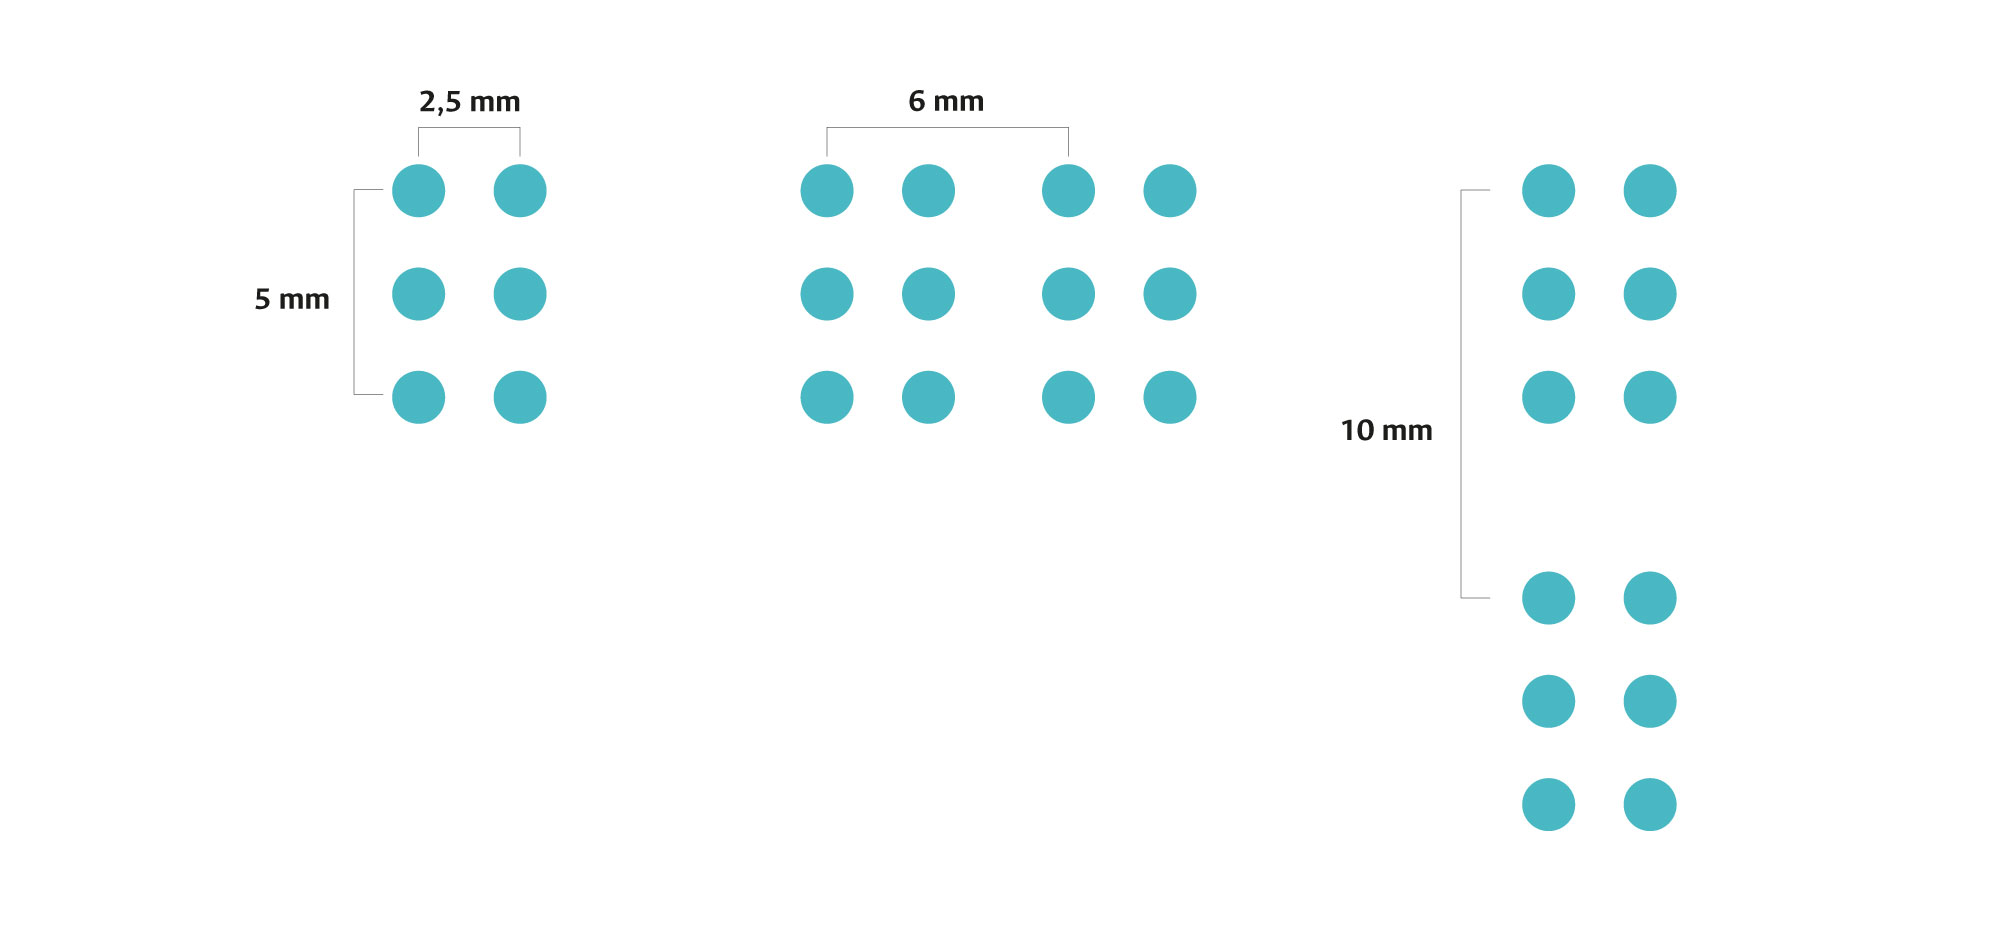 Tamaños de lectura del sistema braille